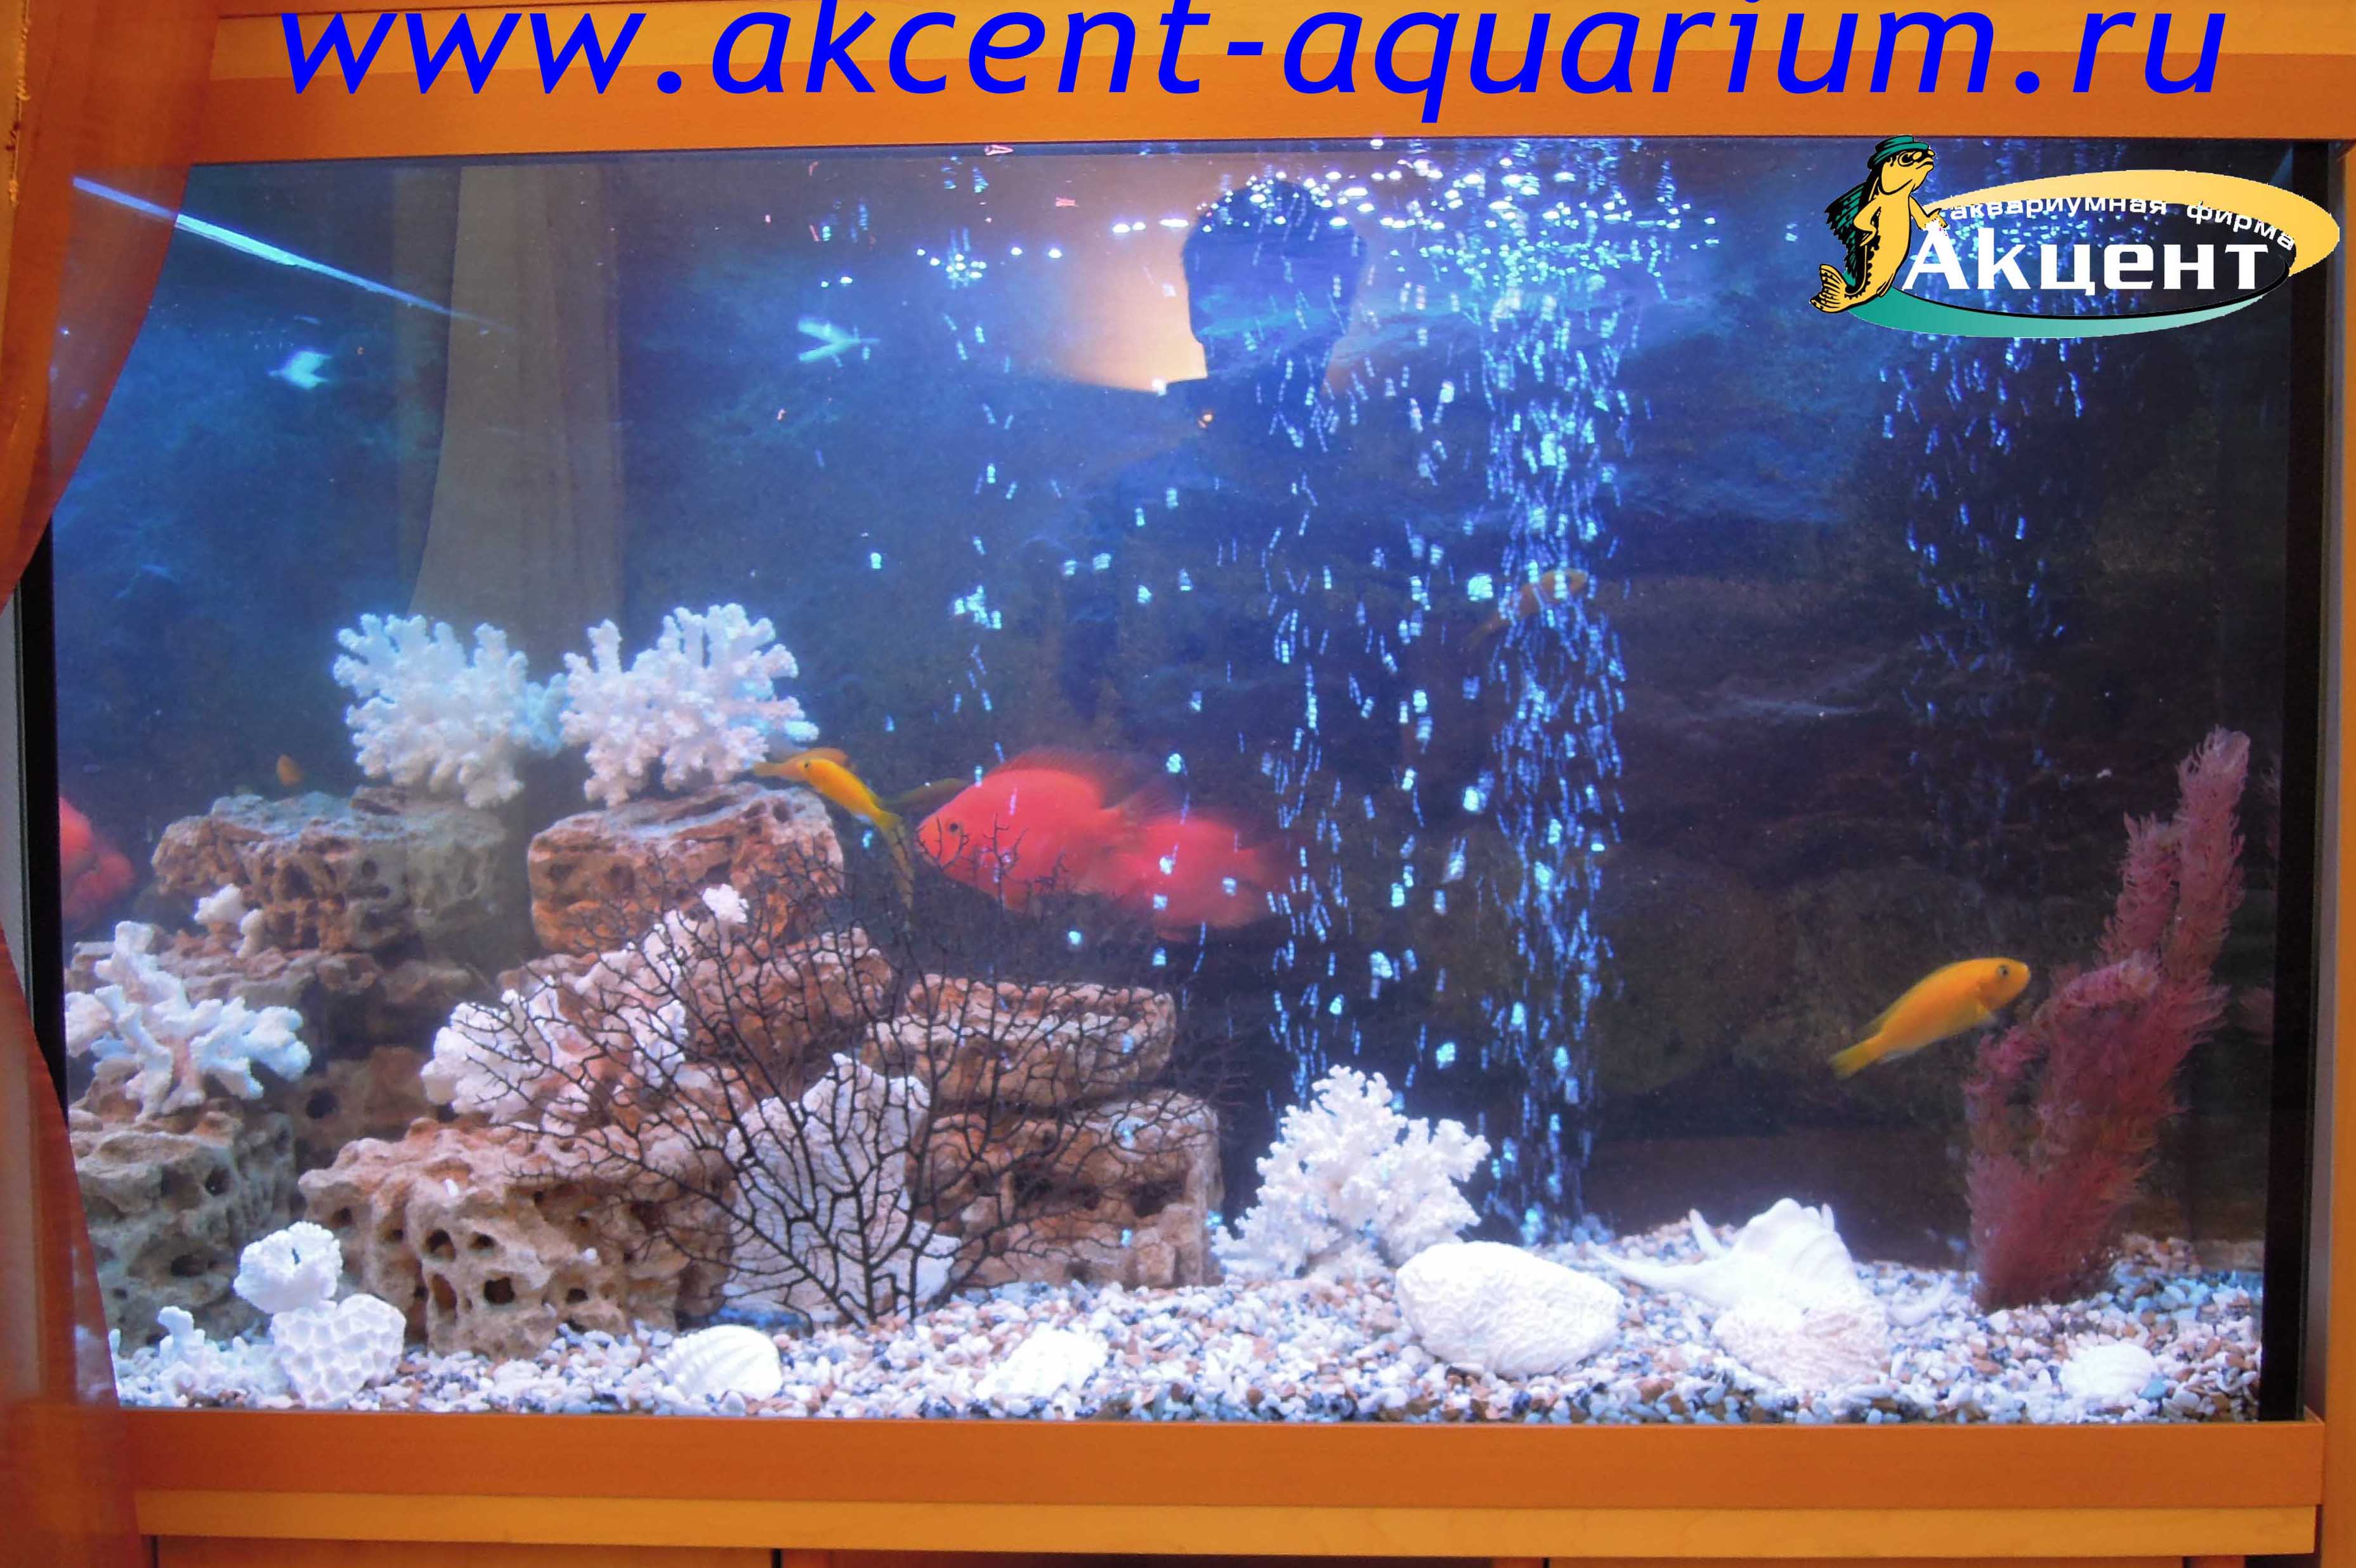 Акцент-аквариум, аквариум 350 литров, псевдоморе, африканские цихлиды, попугаи